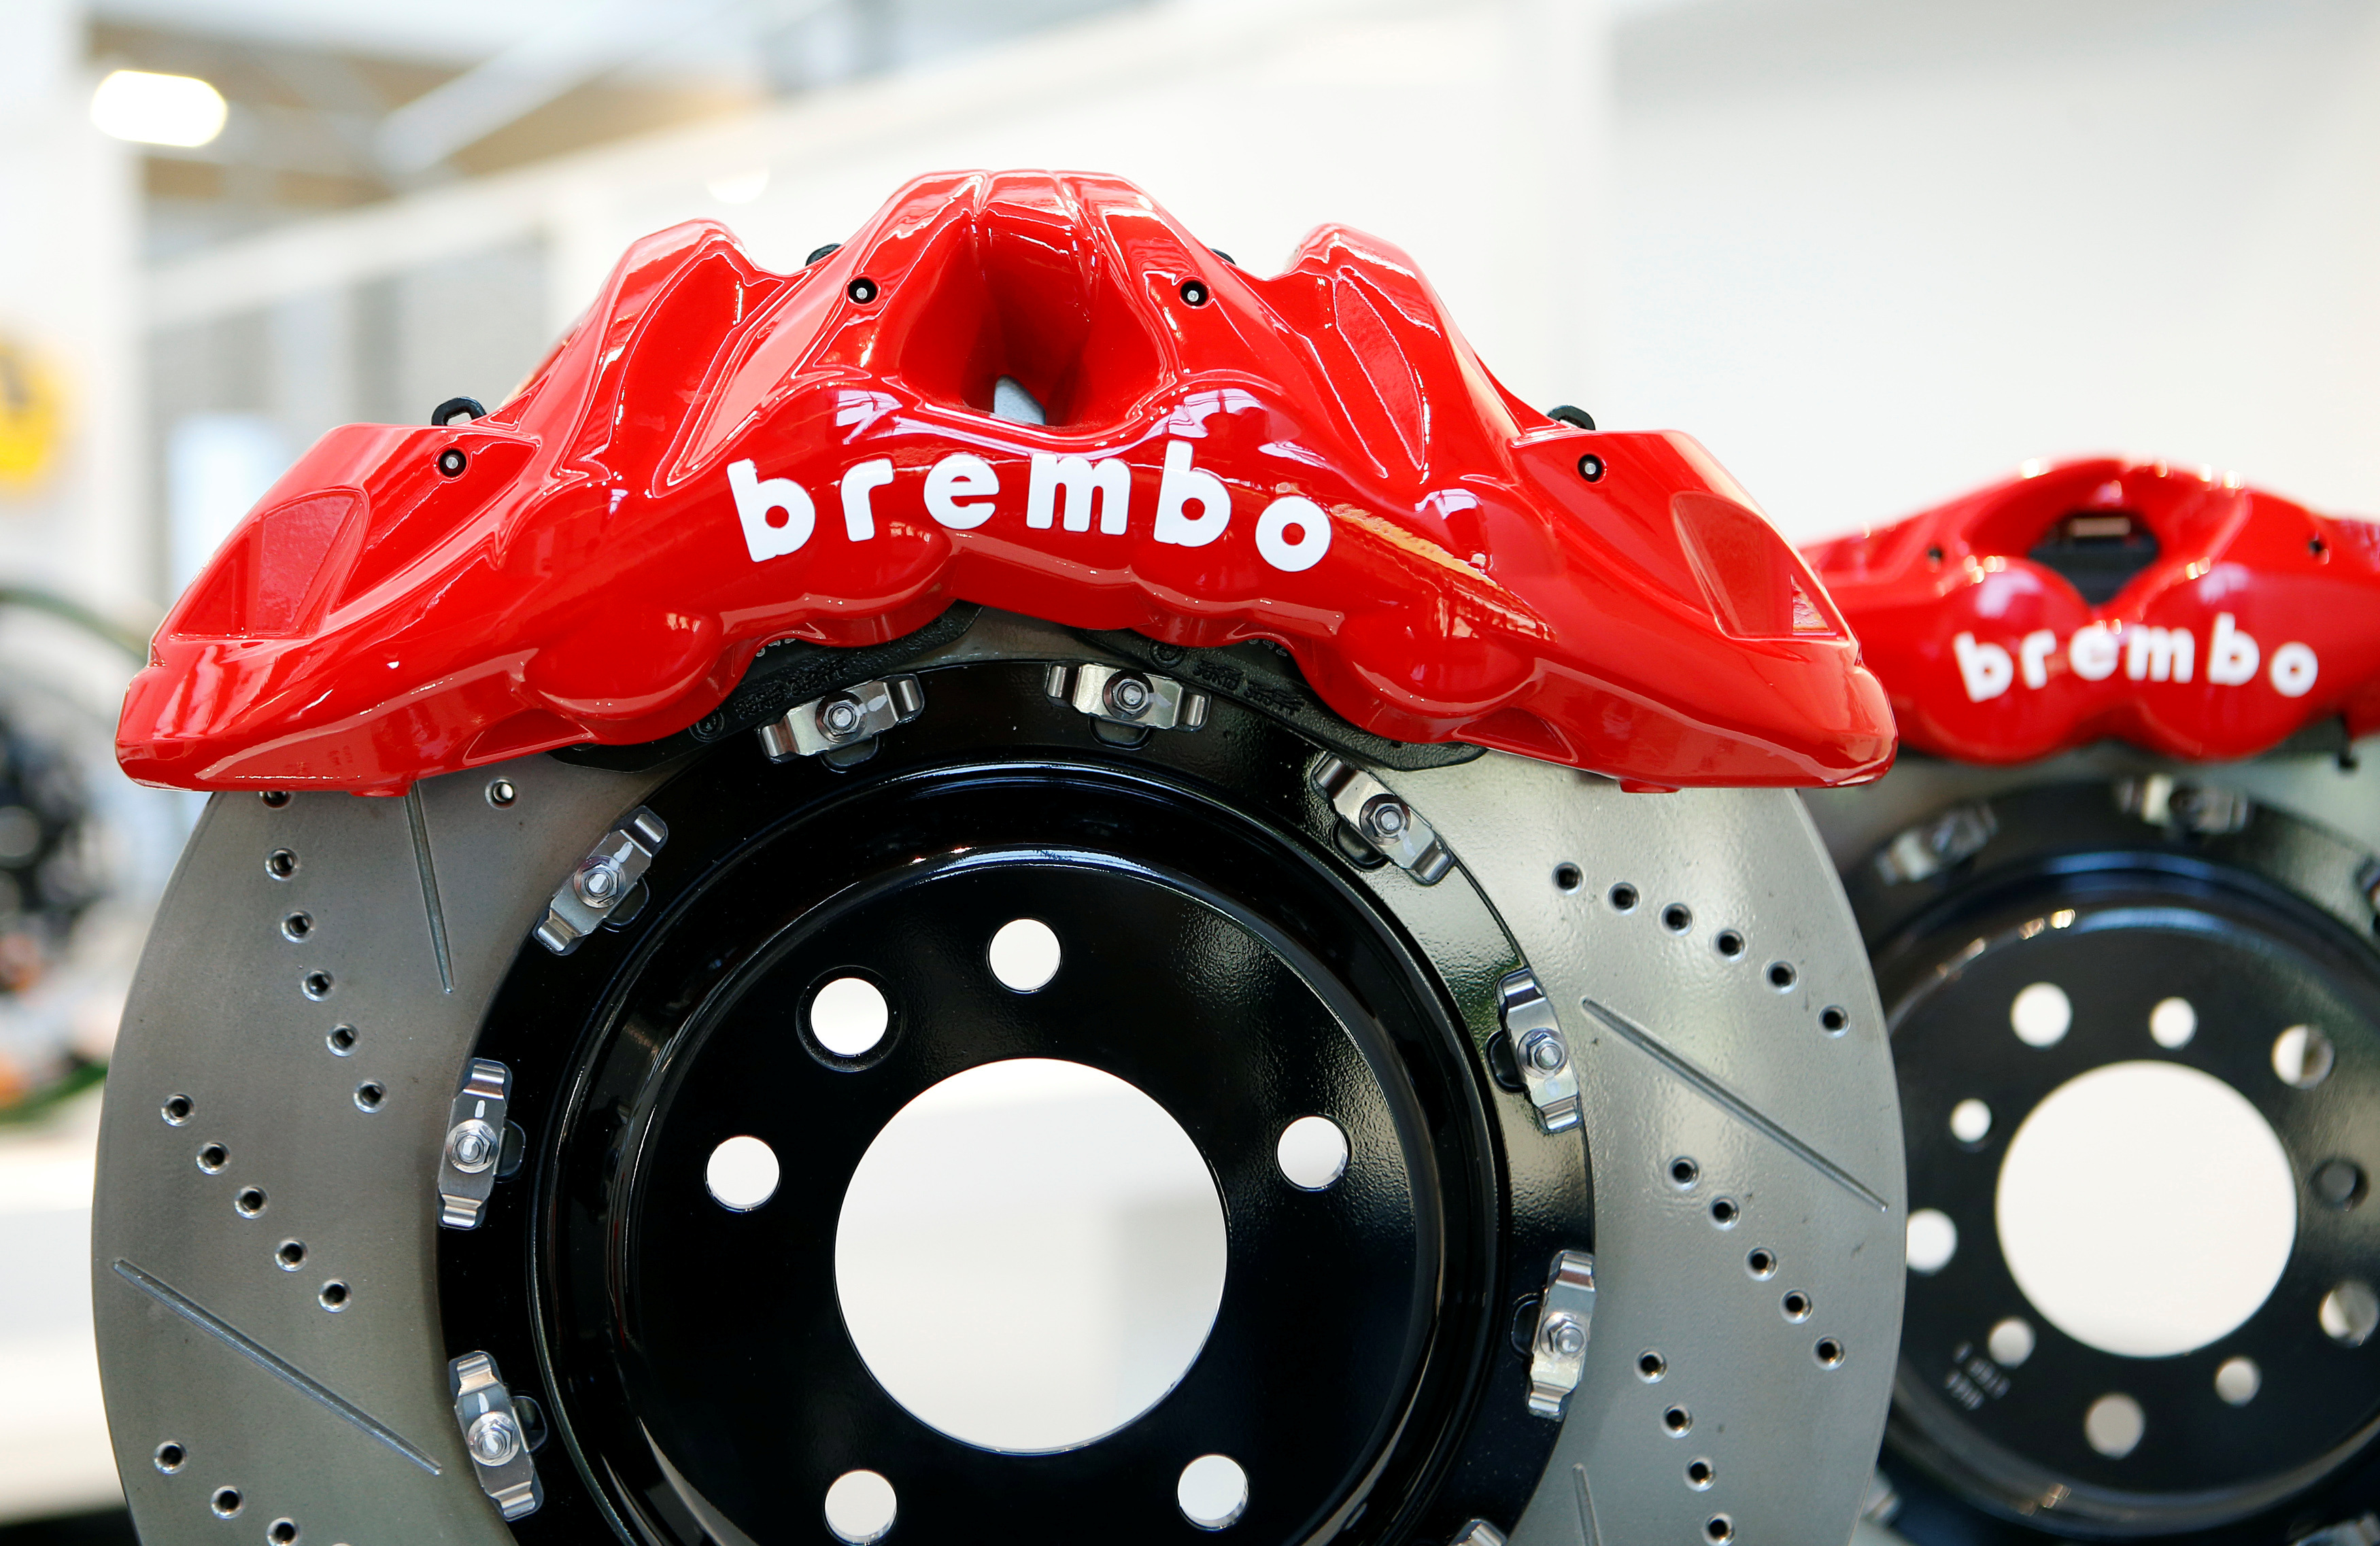 Brembo Technical Partner 